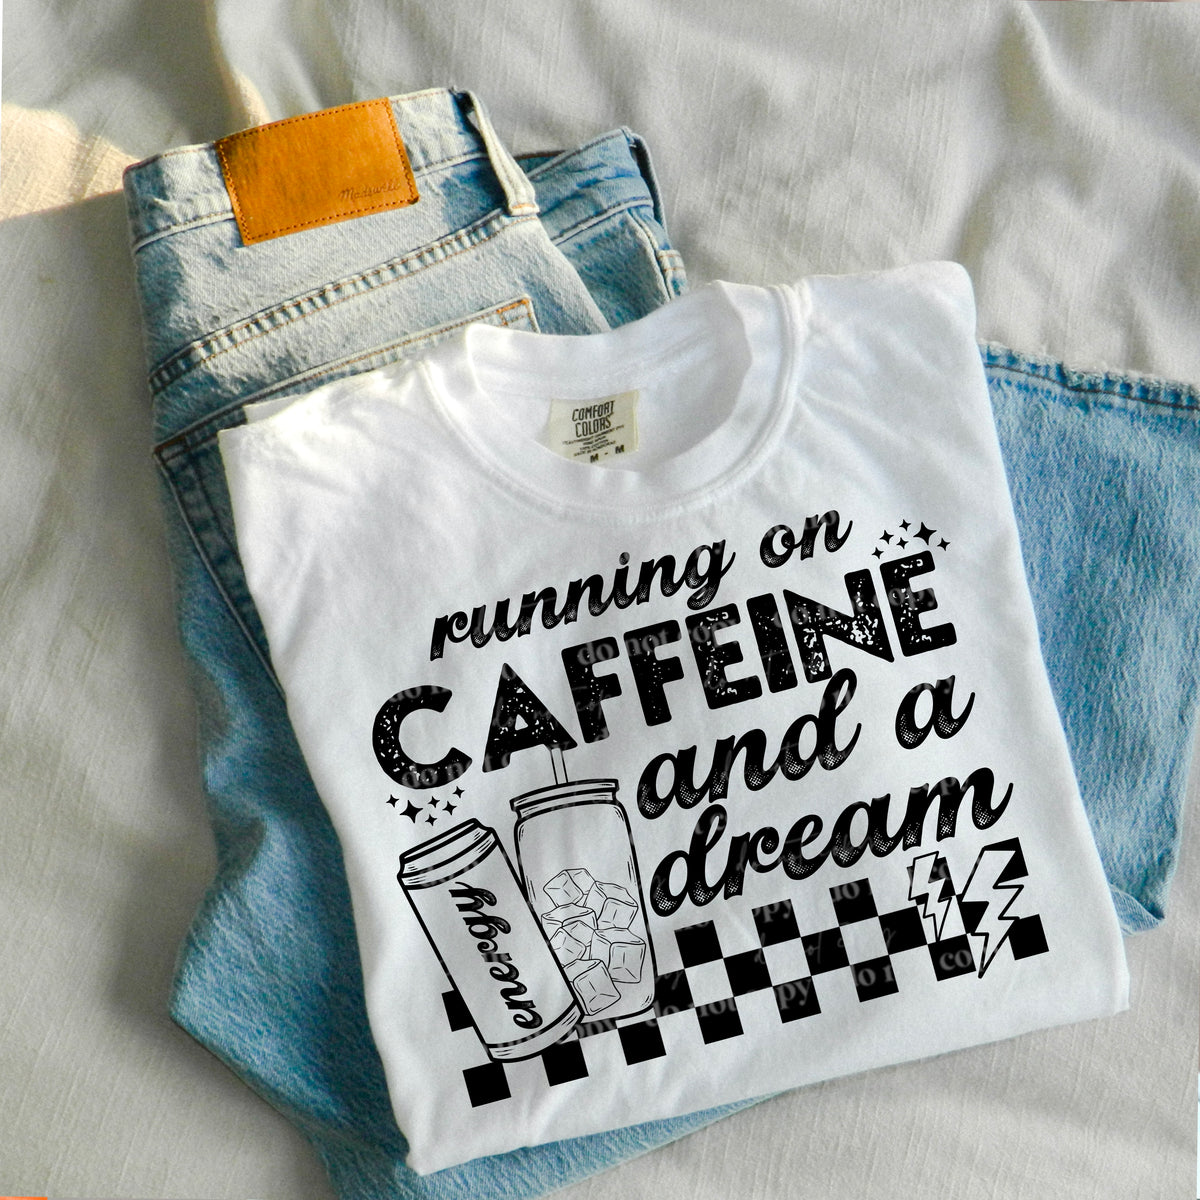 Caffeine and a dream